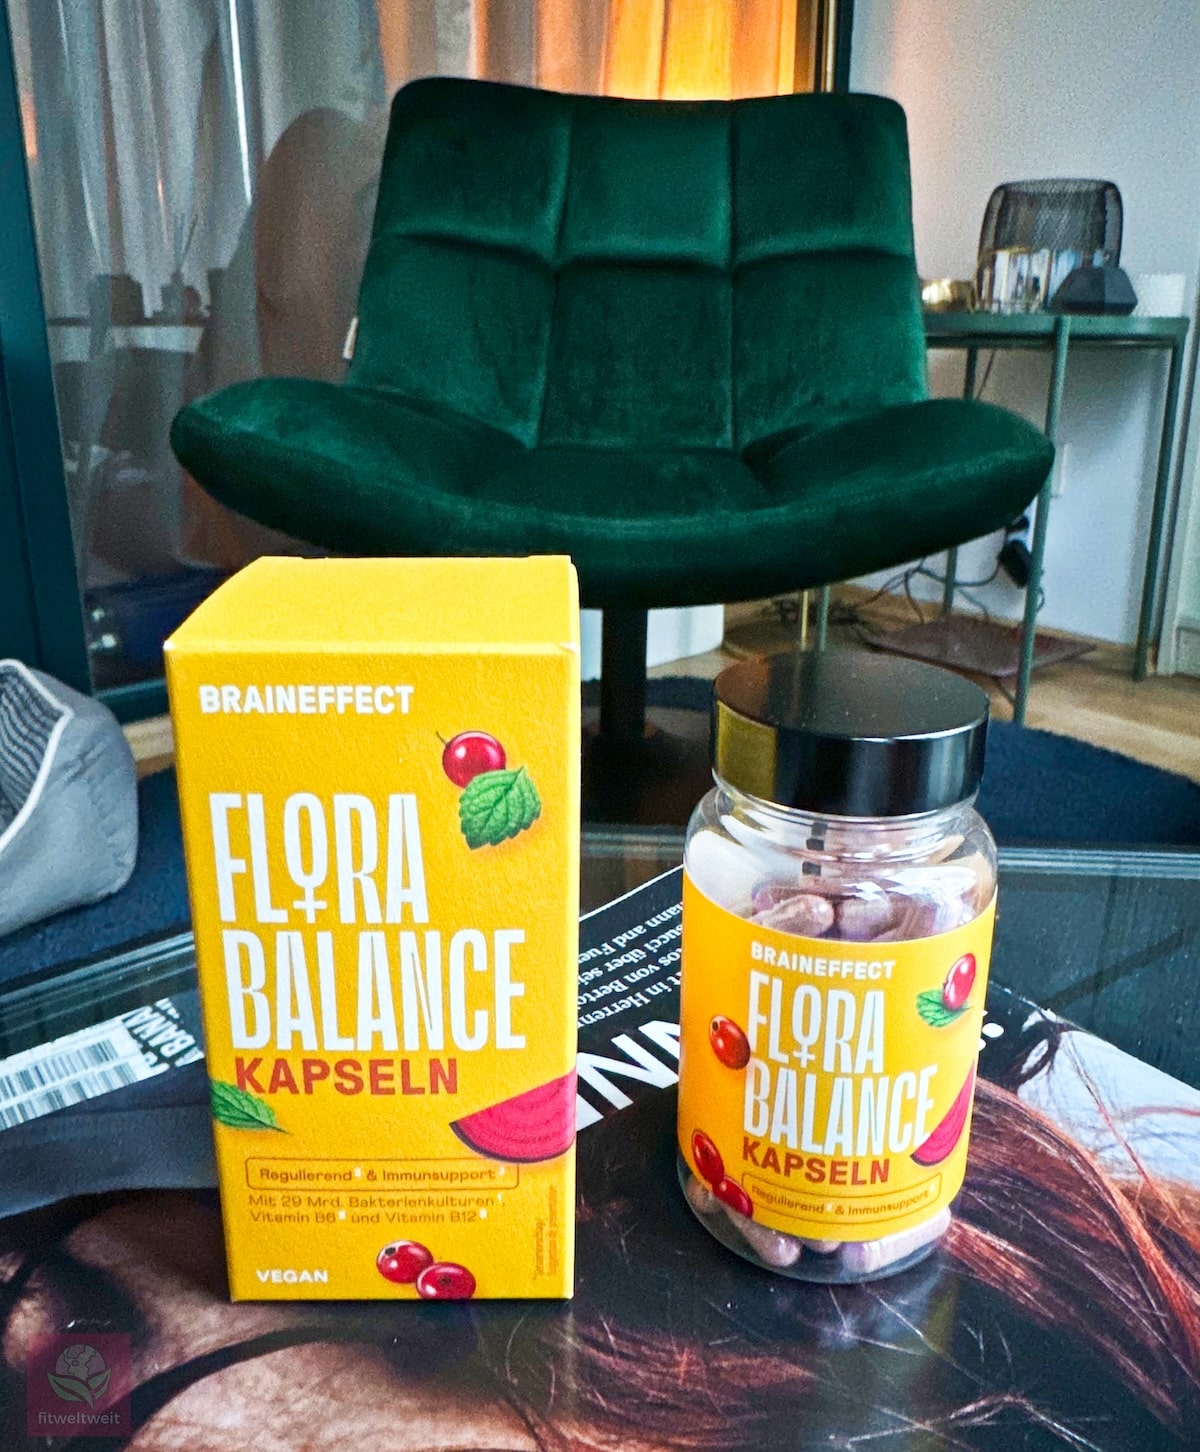 Flora Balance Kapseln Braineffect Erfahrungen